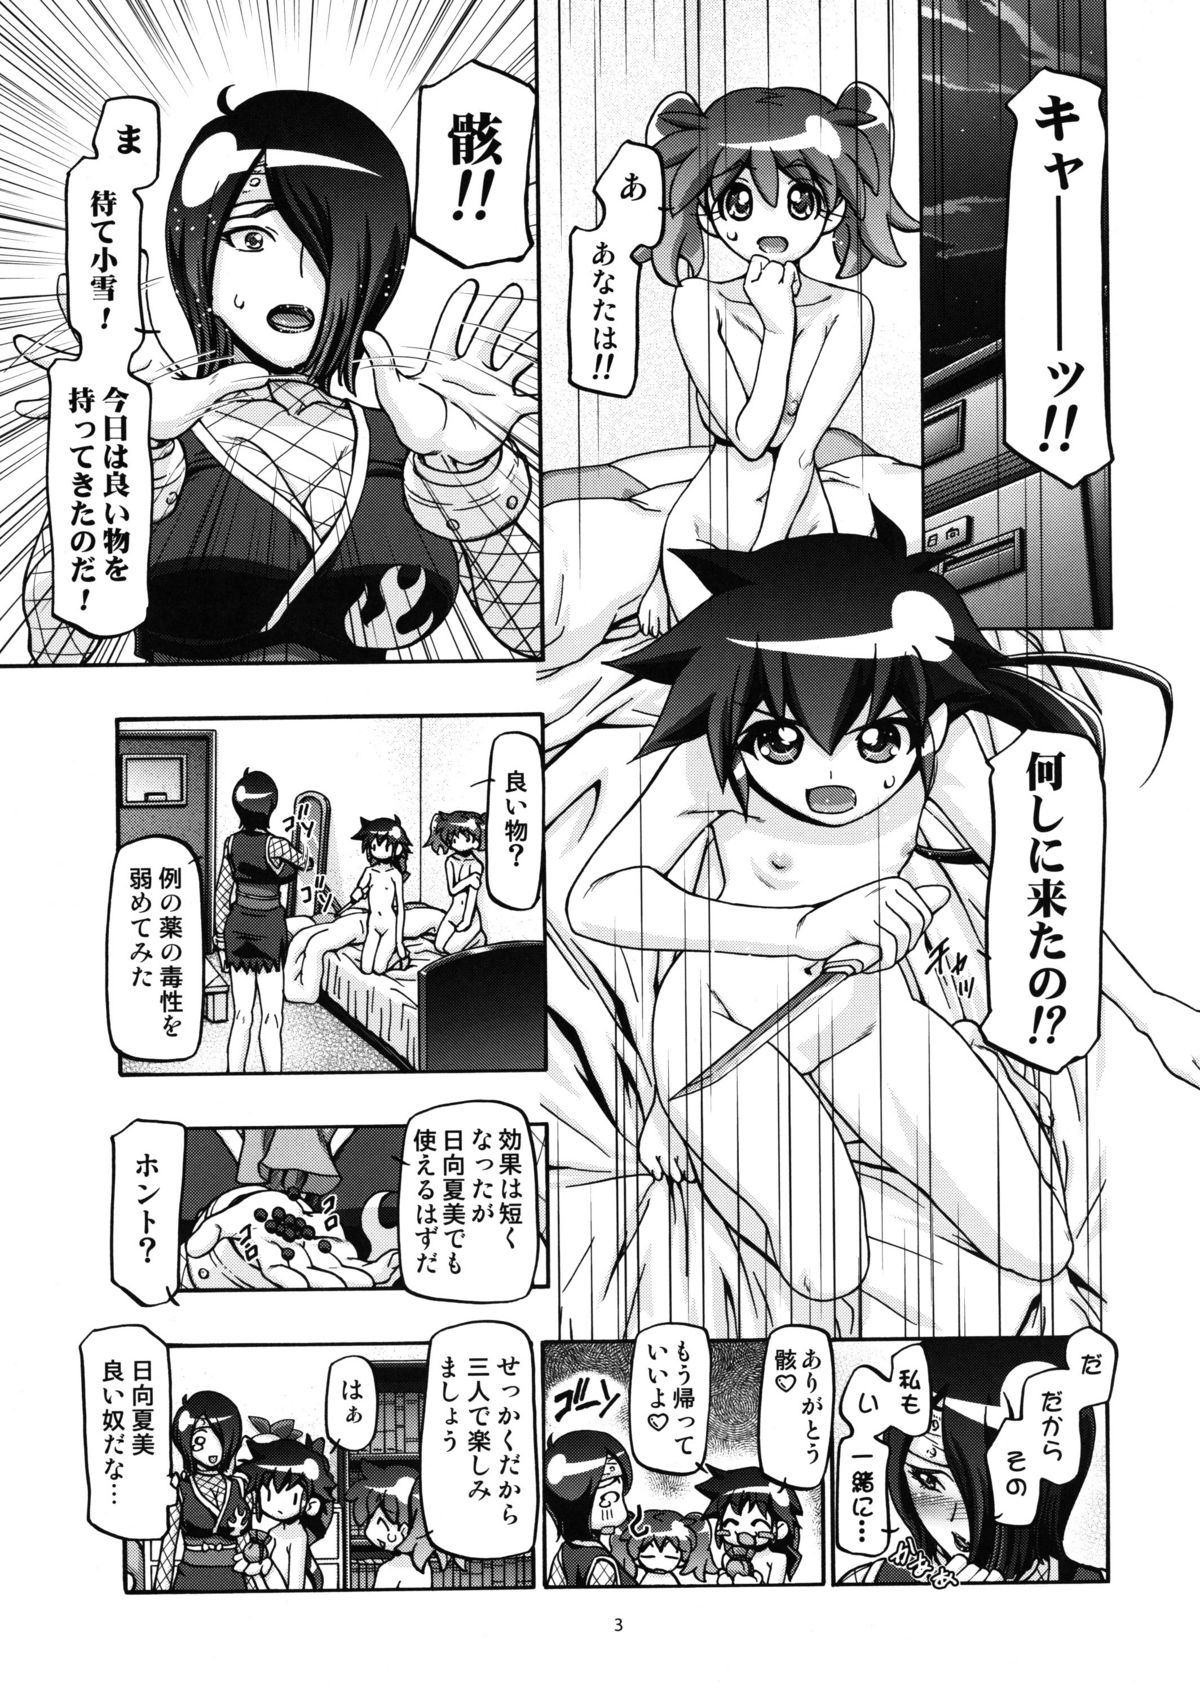 (COMIC1☆5) [Gambler Club (Kousaka Jun)] Aki - Autumn (Keroro Gunsou) page 3 full